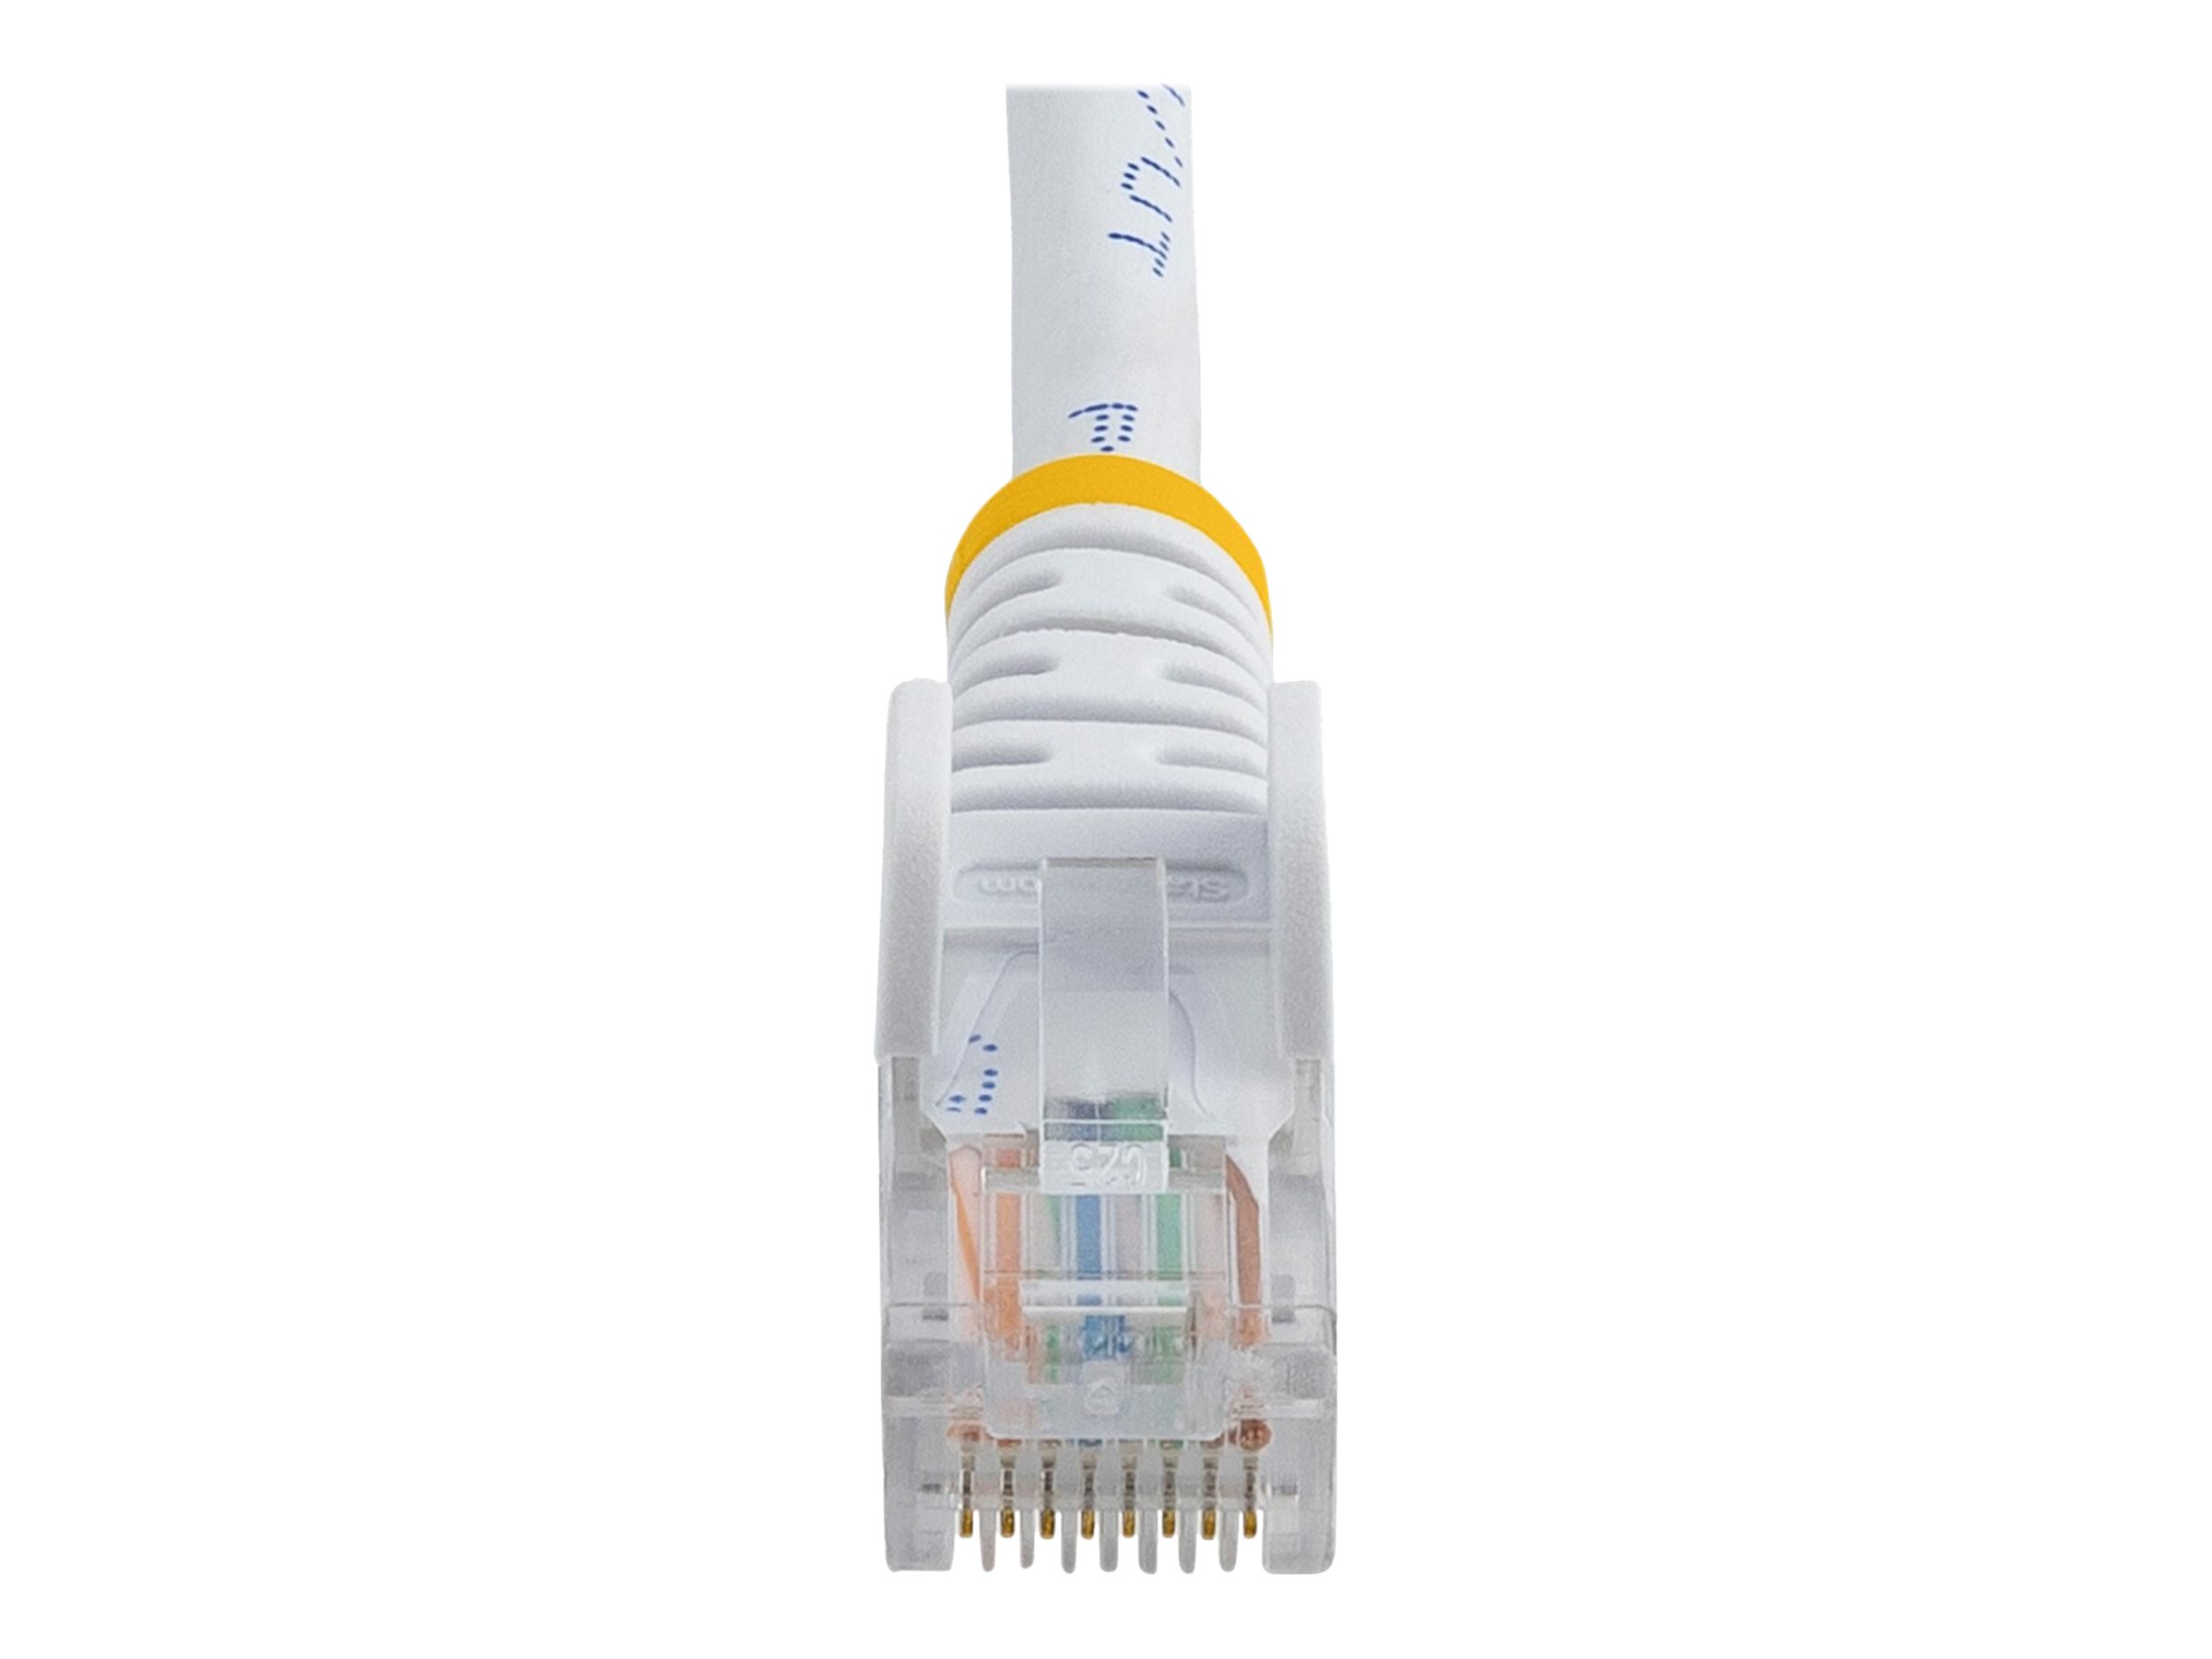 StarTech.com Câble réseau Cat5e UTP sans crochet de 2 m - Cordon Ethernet RJ45 anti-accroc - Câble patch - M/M - Blanc - Cordon de raccordement - RJ-45 (M) pour RJ-45 (M) - 2 m - UTP - CAT 5e - moulé, sans crochet - blanc - 45PAT2MWH - Câbles à paire torsadée